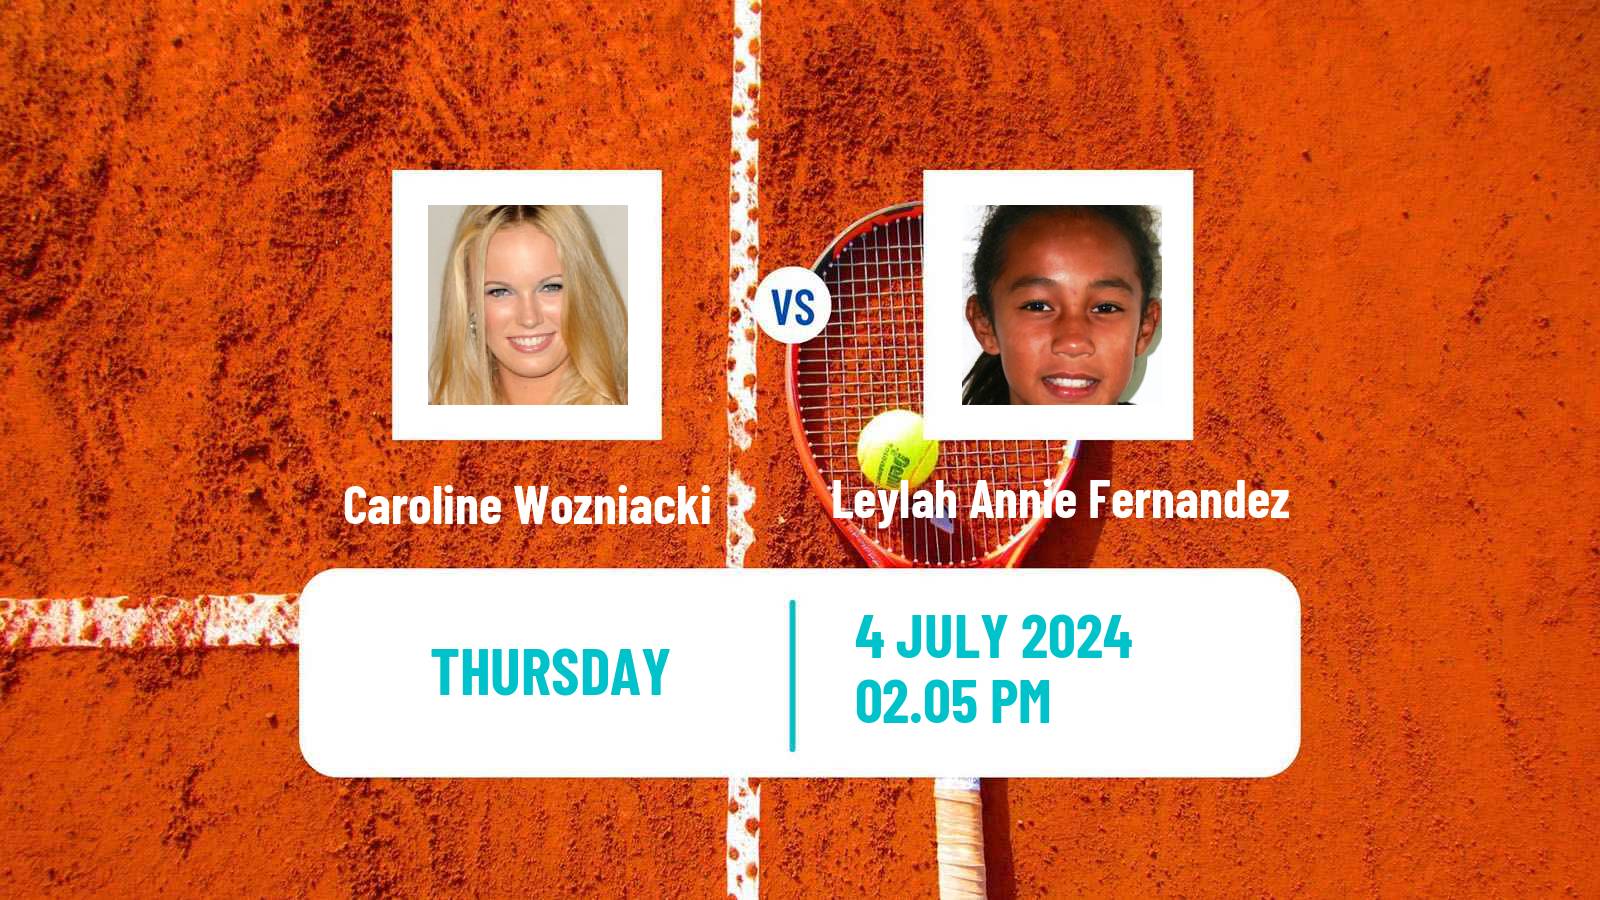 Tennis WTA Wimbledon Caroline Wozniacki - Leylah Annie Fernandez